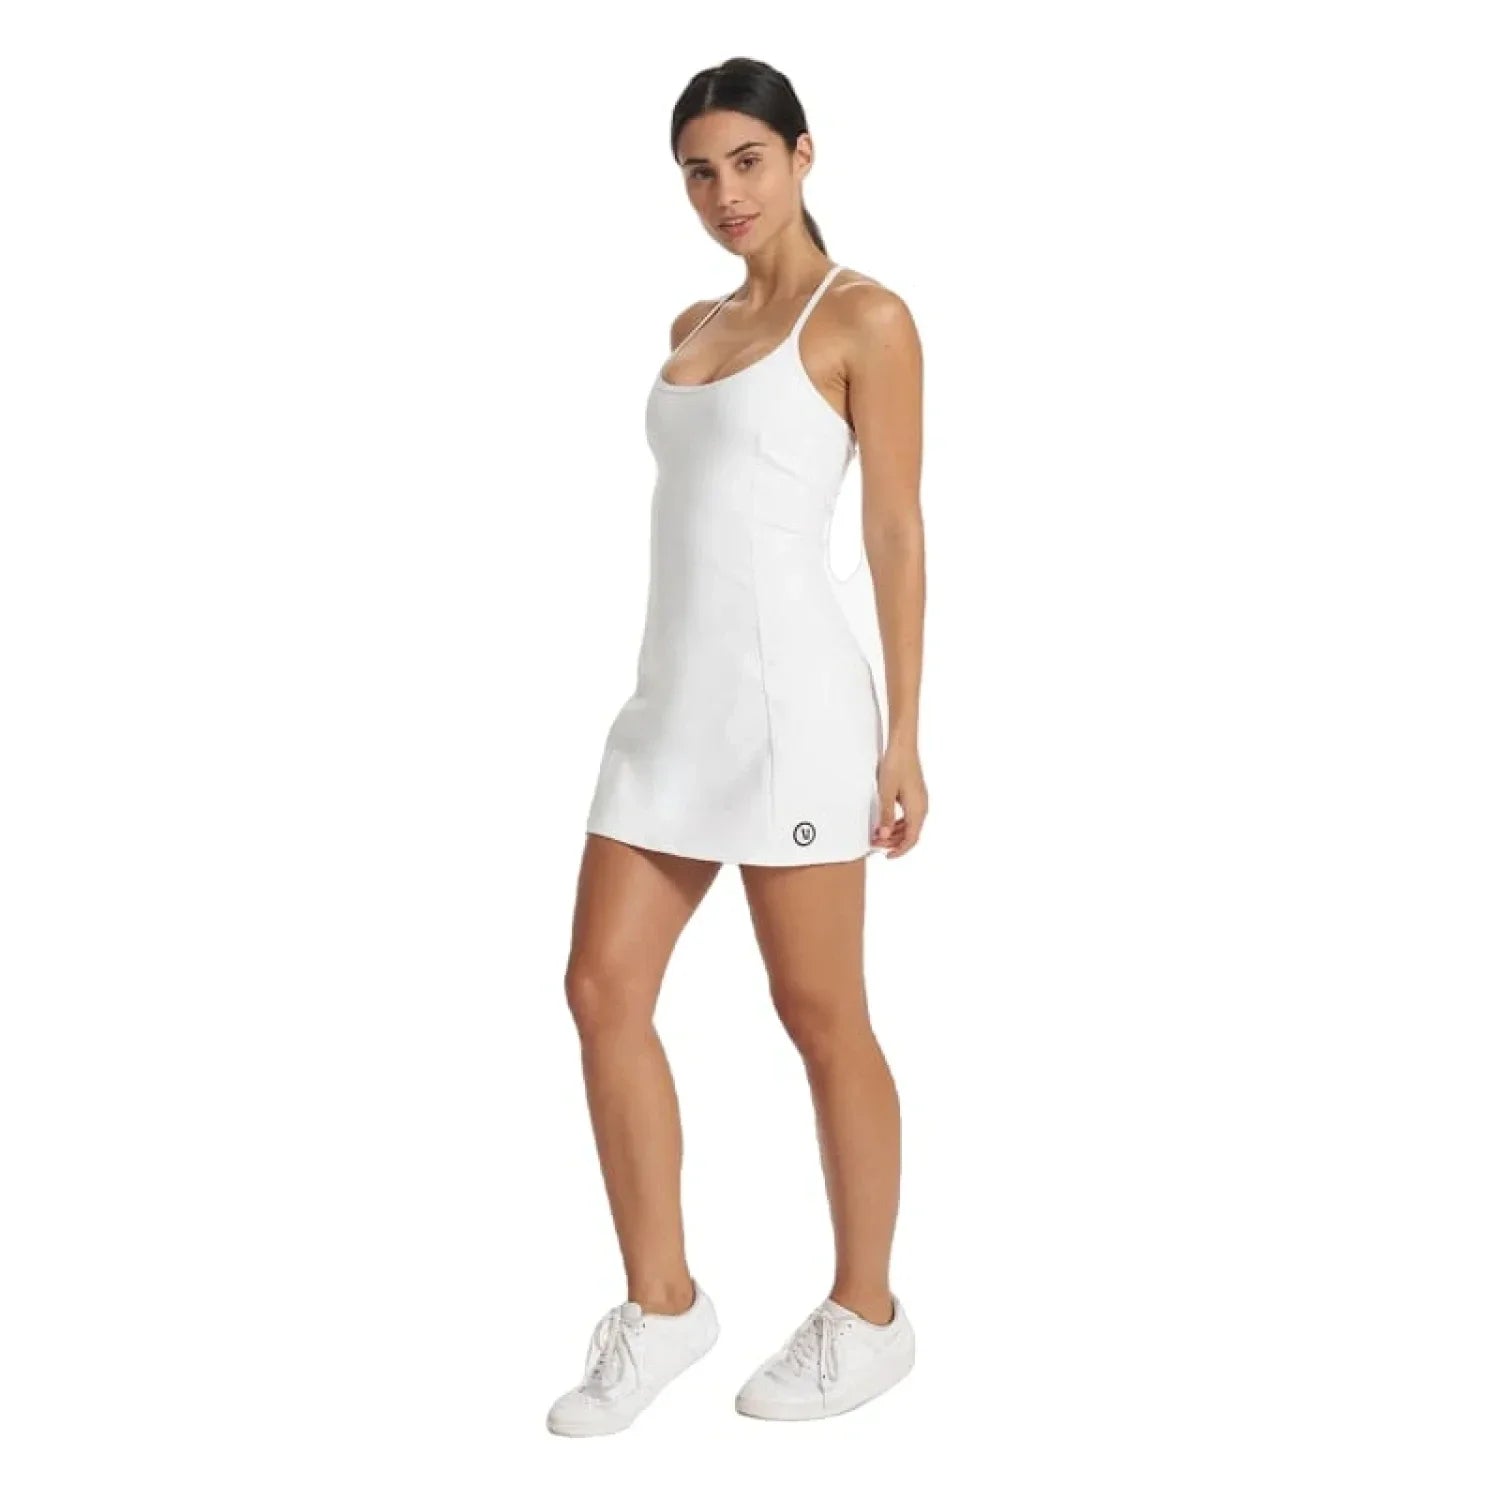 Vuori 02. WOMENS APPAREL - WOMENS DRESS|SKIRT - WOMENS DRESS ACTIVE Women's One Shot Tennis Dress WHT WHITE